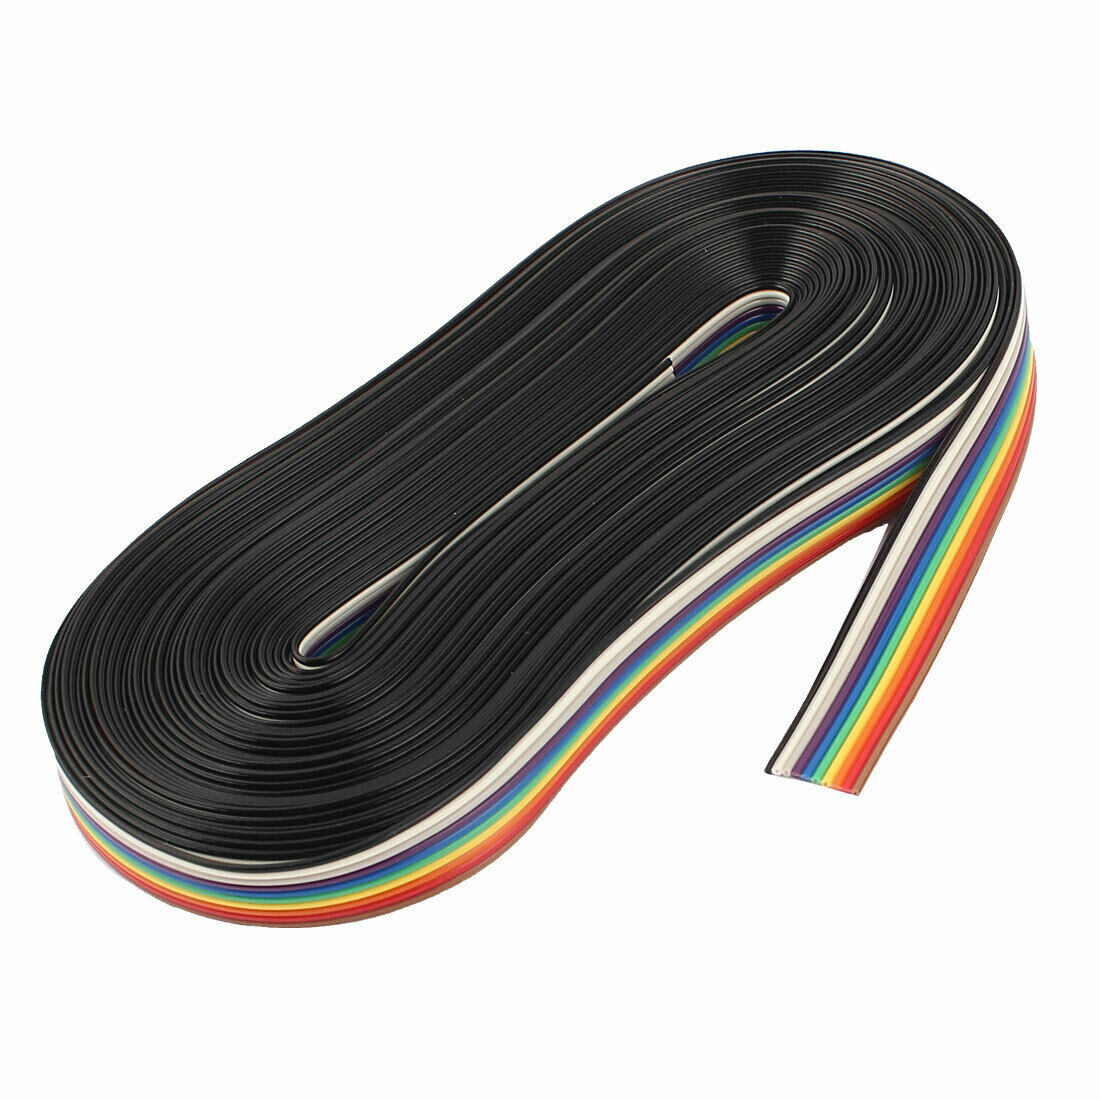 Cable de puente de cinta plana de color arcoíris de 10M y 10 pines